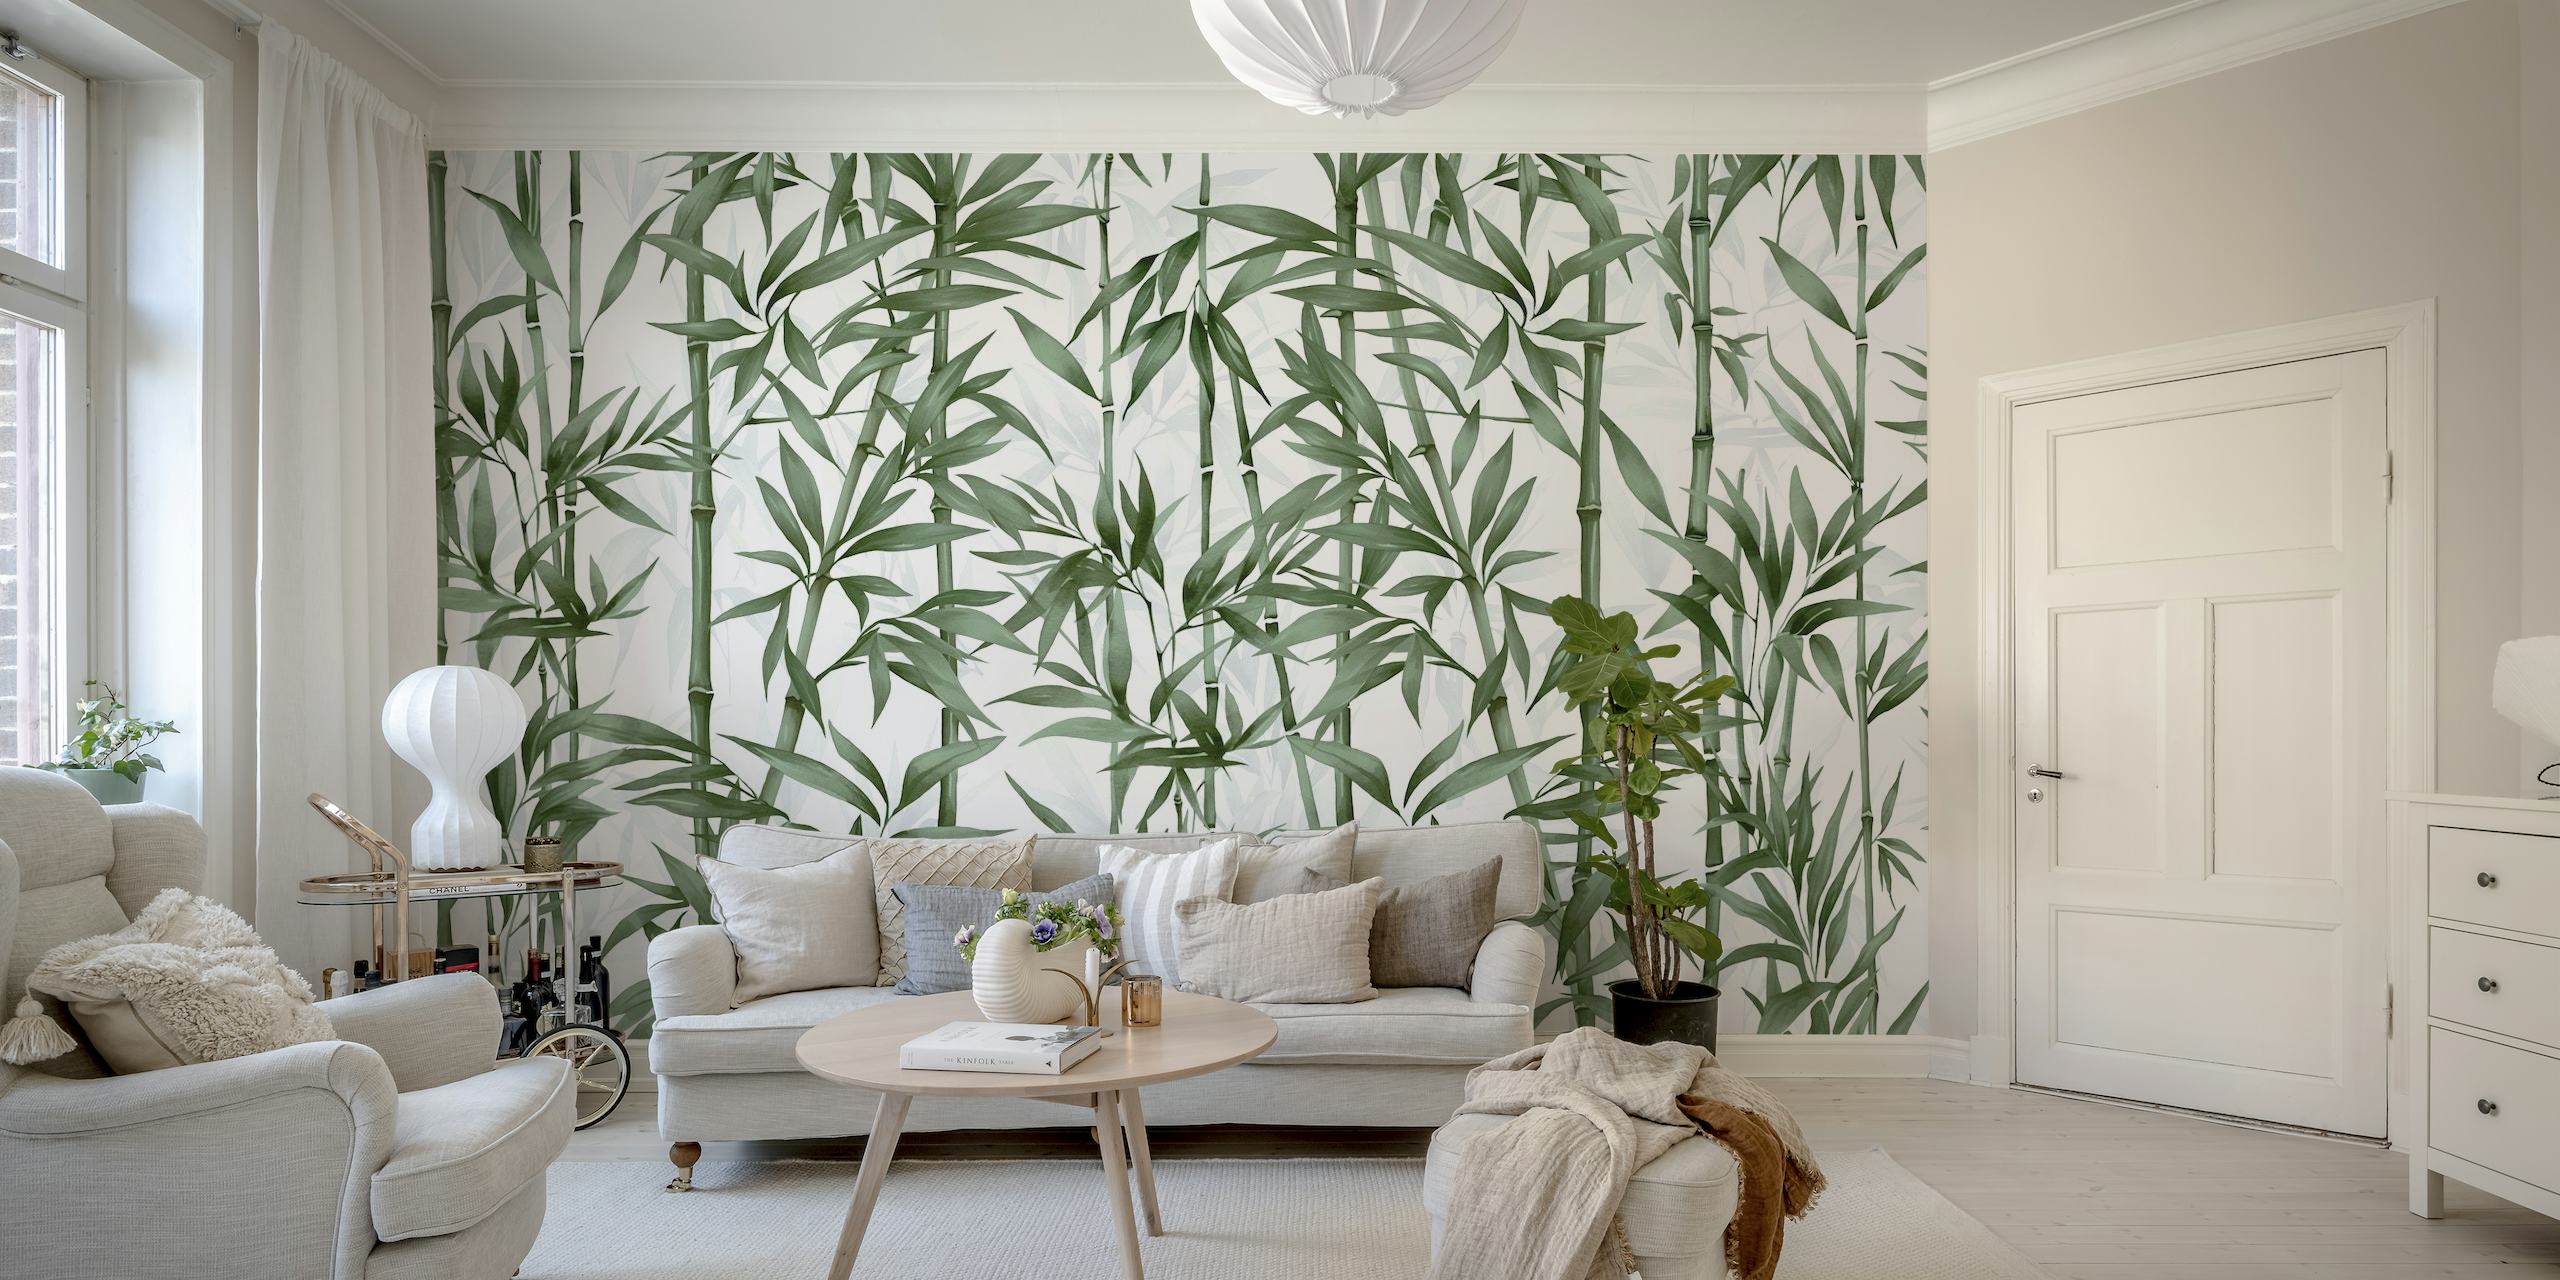 Fotomural de tallos de bambú verde para una decoración interior tranquila